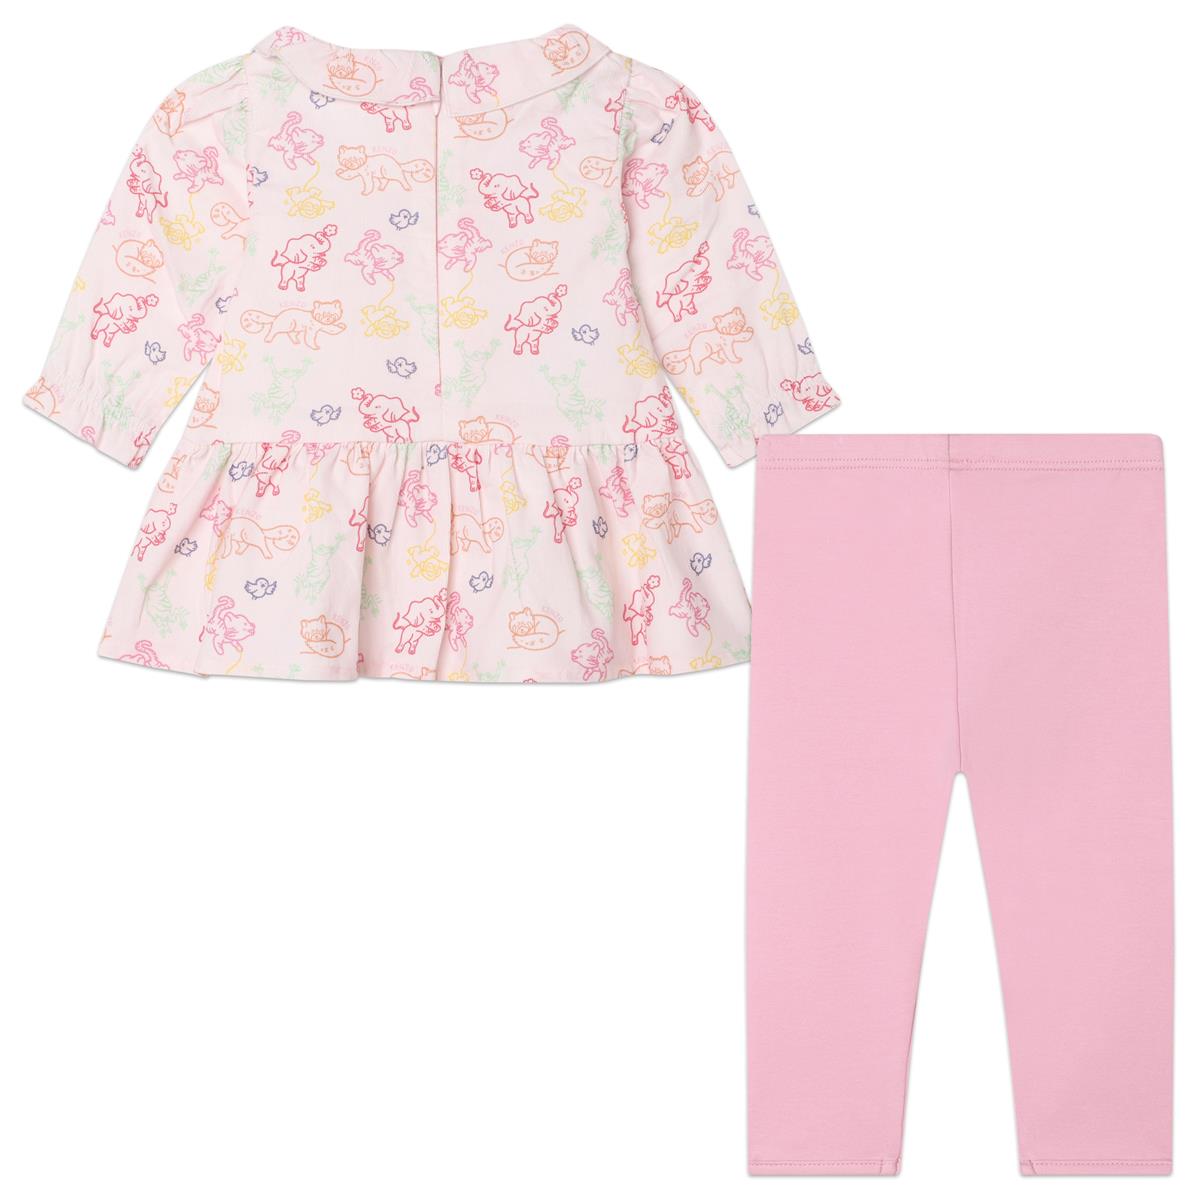 Baby Girls Pink Printed Cotton Set